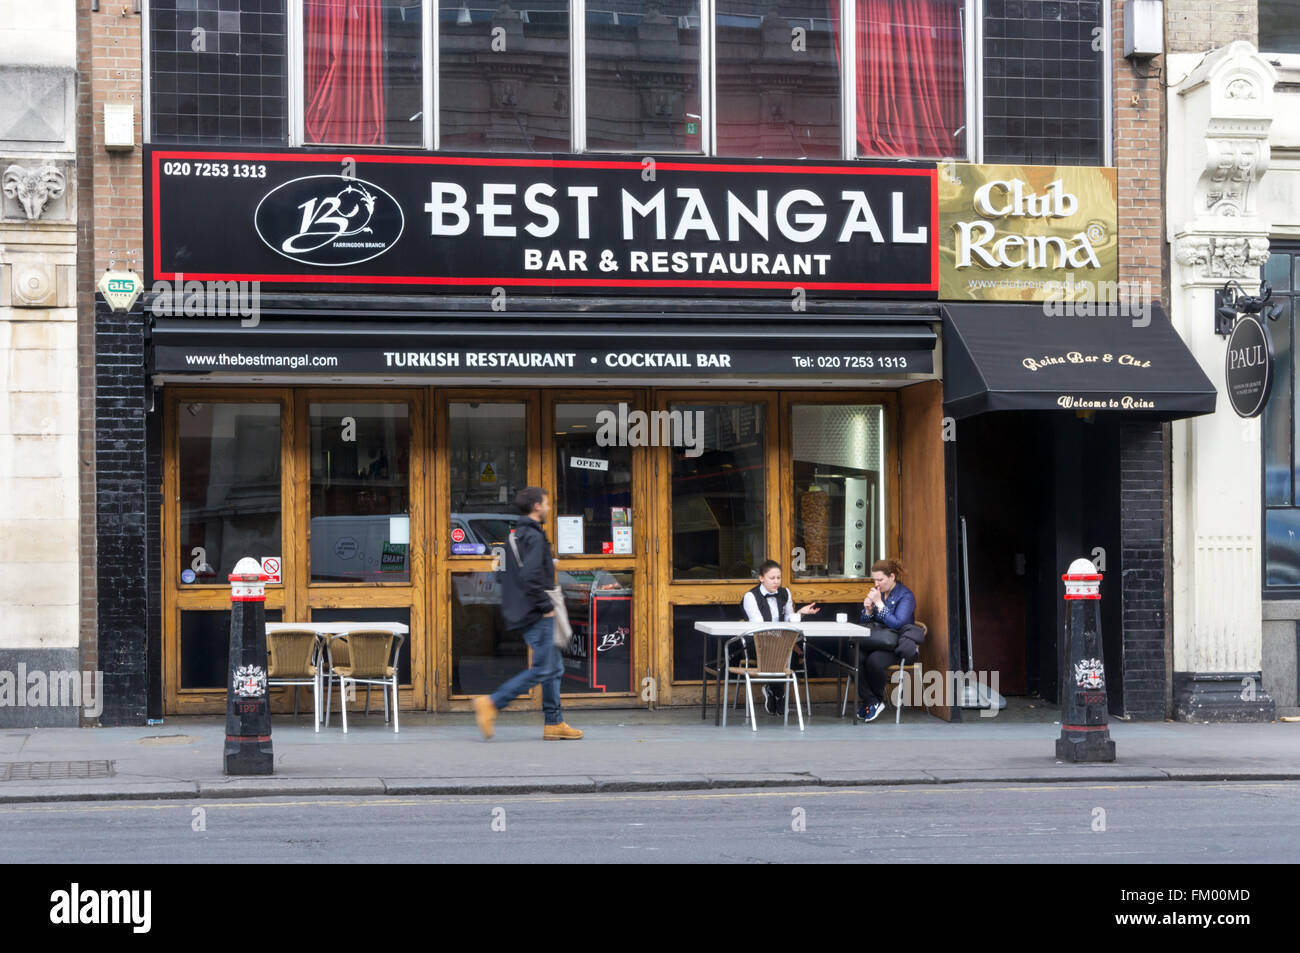 Am besten Mangal türkisches Restaurant in Smithfield, London. Stockfoto